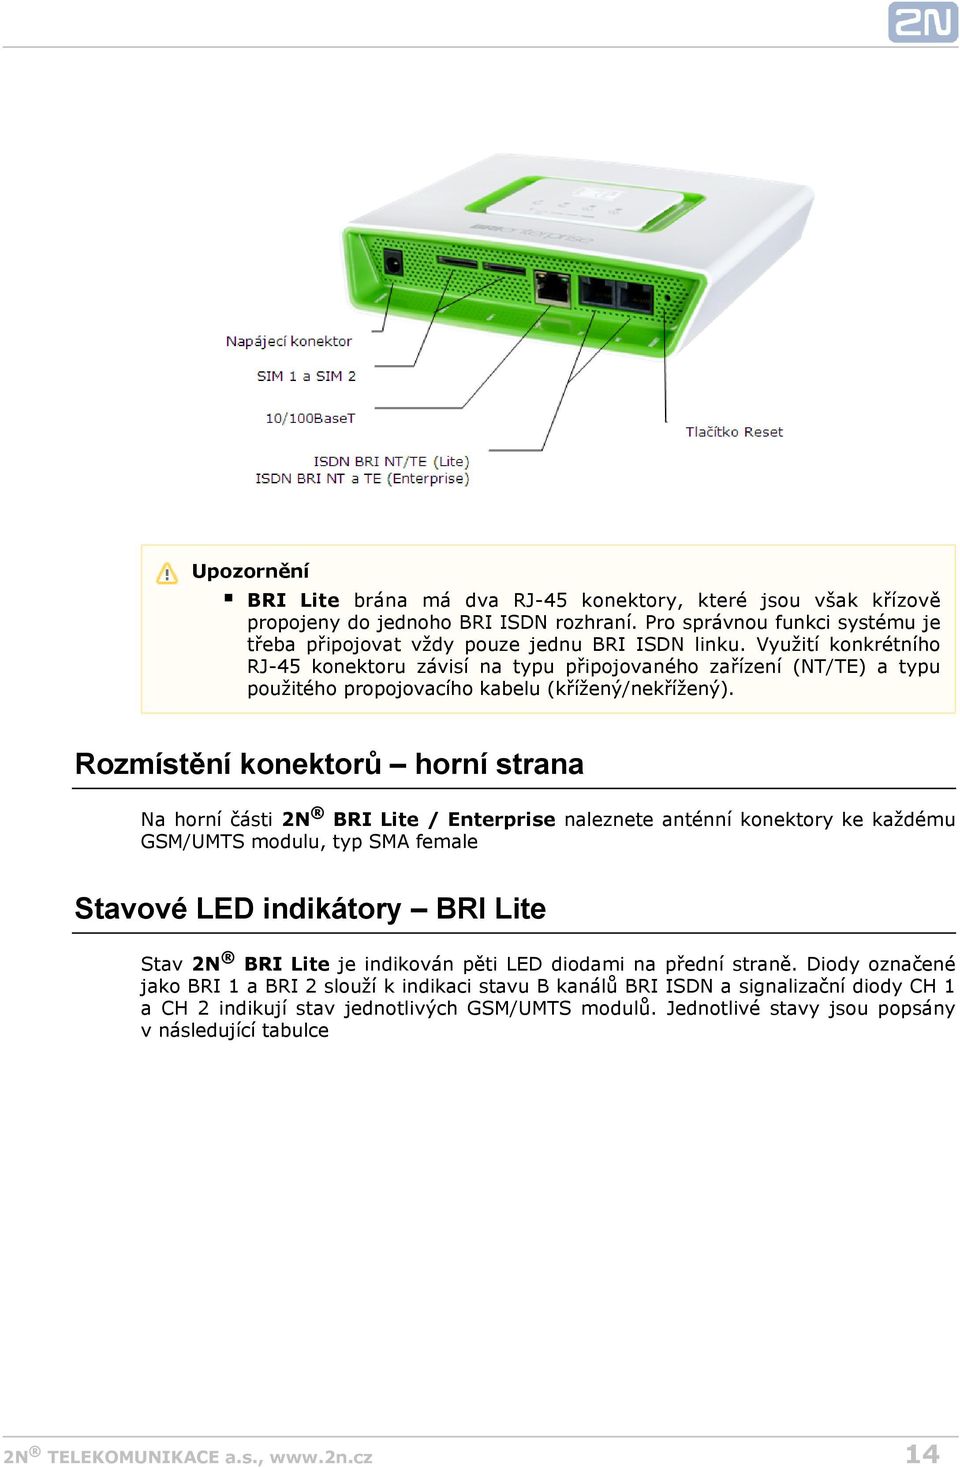 Rozmístění konektorů horní strana Na horní části 2N BRI Lite / Enterprise GSM/UMTS modulu, typ SMA female naleznete anténní konektory ke každému Stavové LED indikátory BRI Lite Stav 2N BRI Lite je